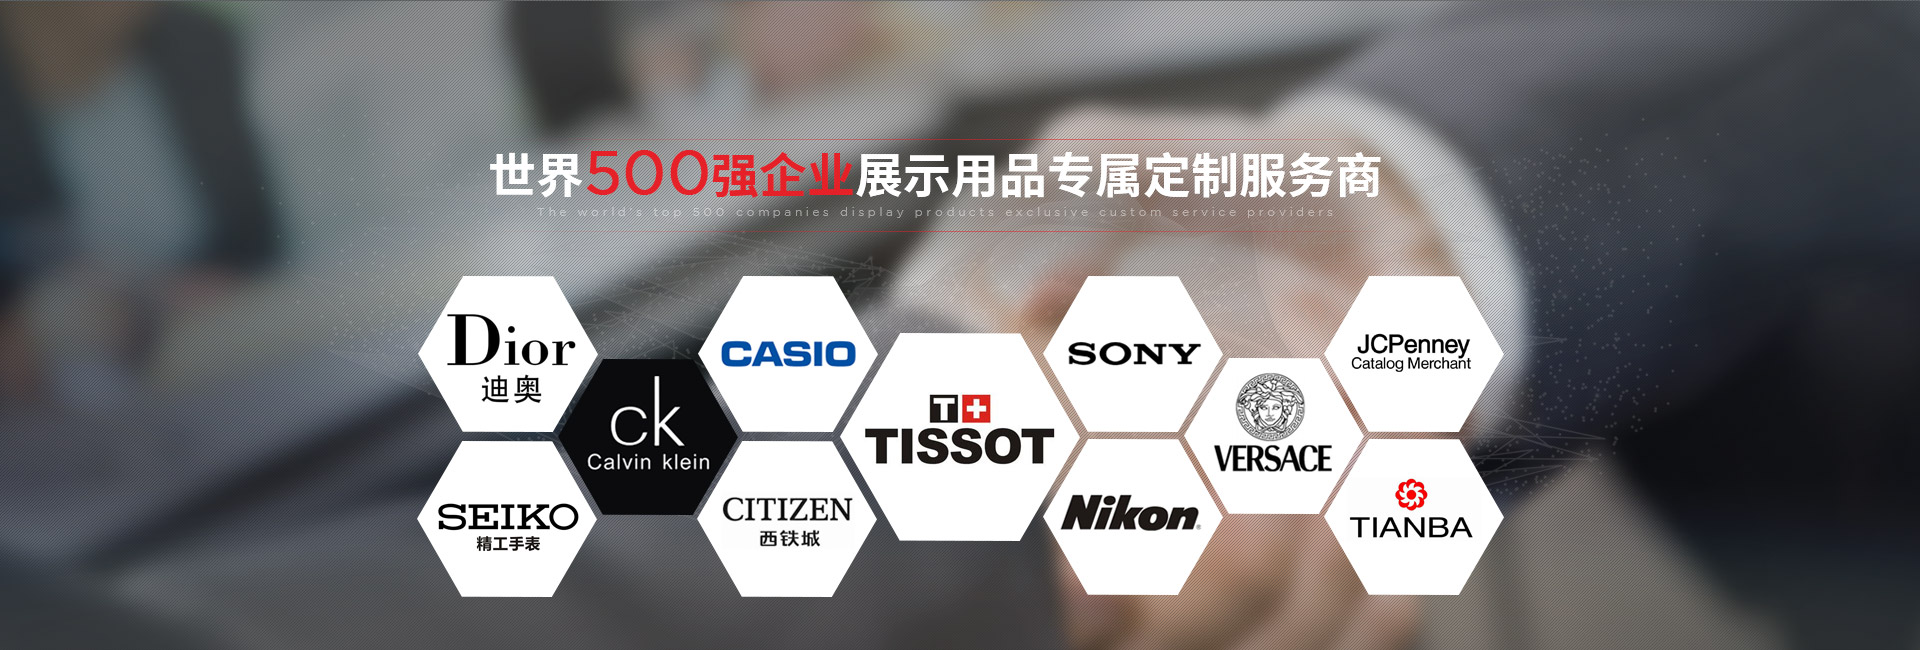 K8凯发版官网-世界500强企业展示用品专属定制服务商